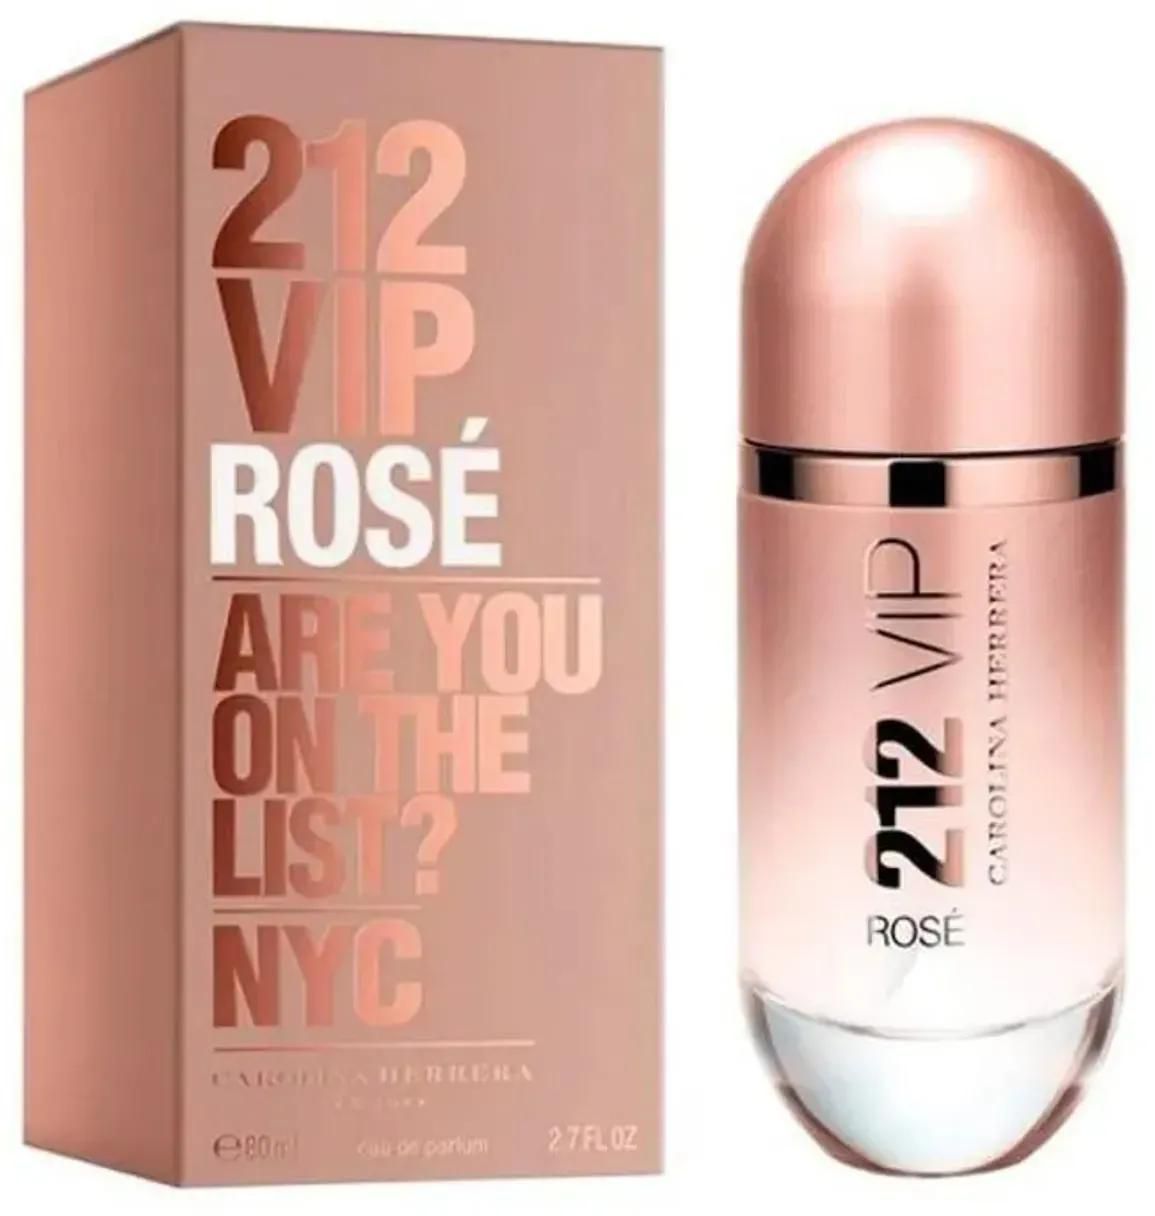 212 VIP Rose Perfume By Carolina Herrera For Women 80ml 80ml